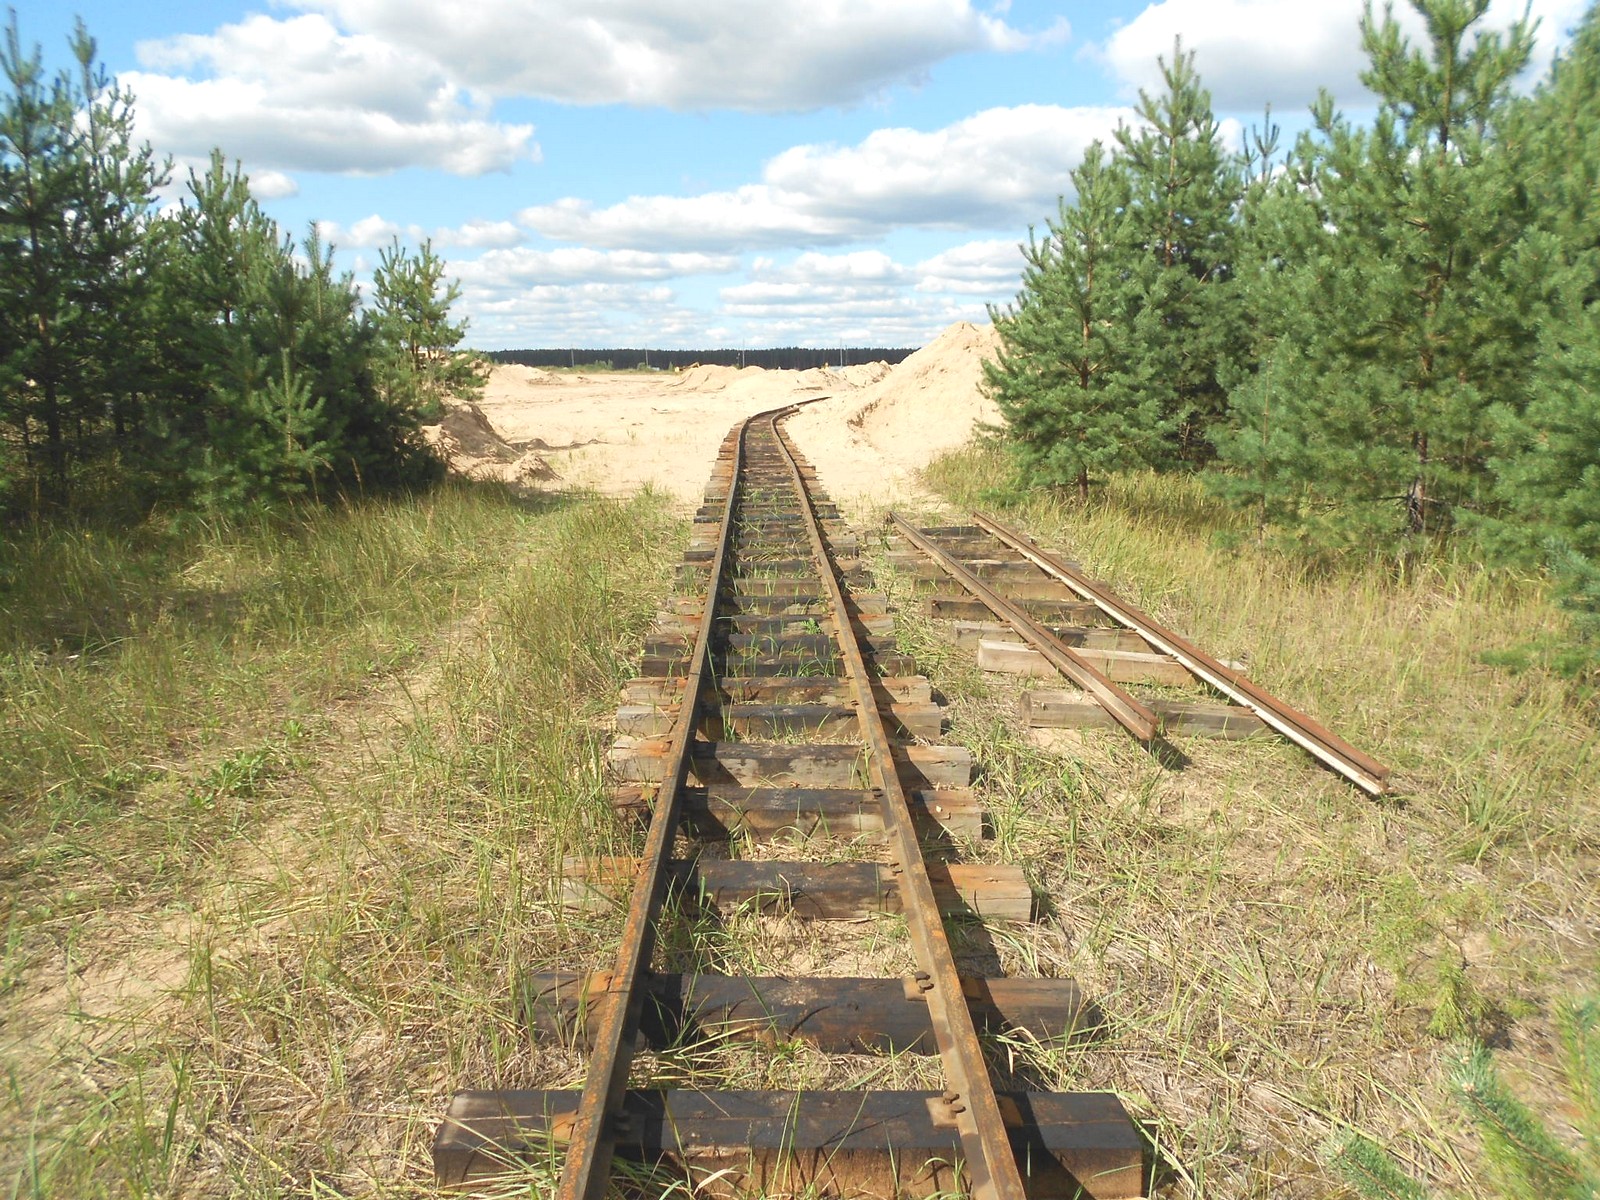 Узкоколейная железная дорога  Тверского комбината строительных материалов №2 — фотографии, сделанные в 2016 году (часть 3)